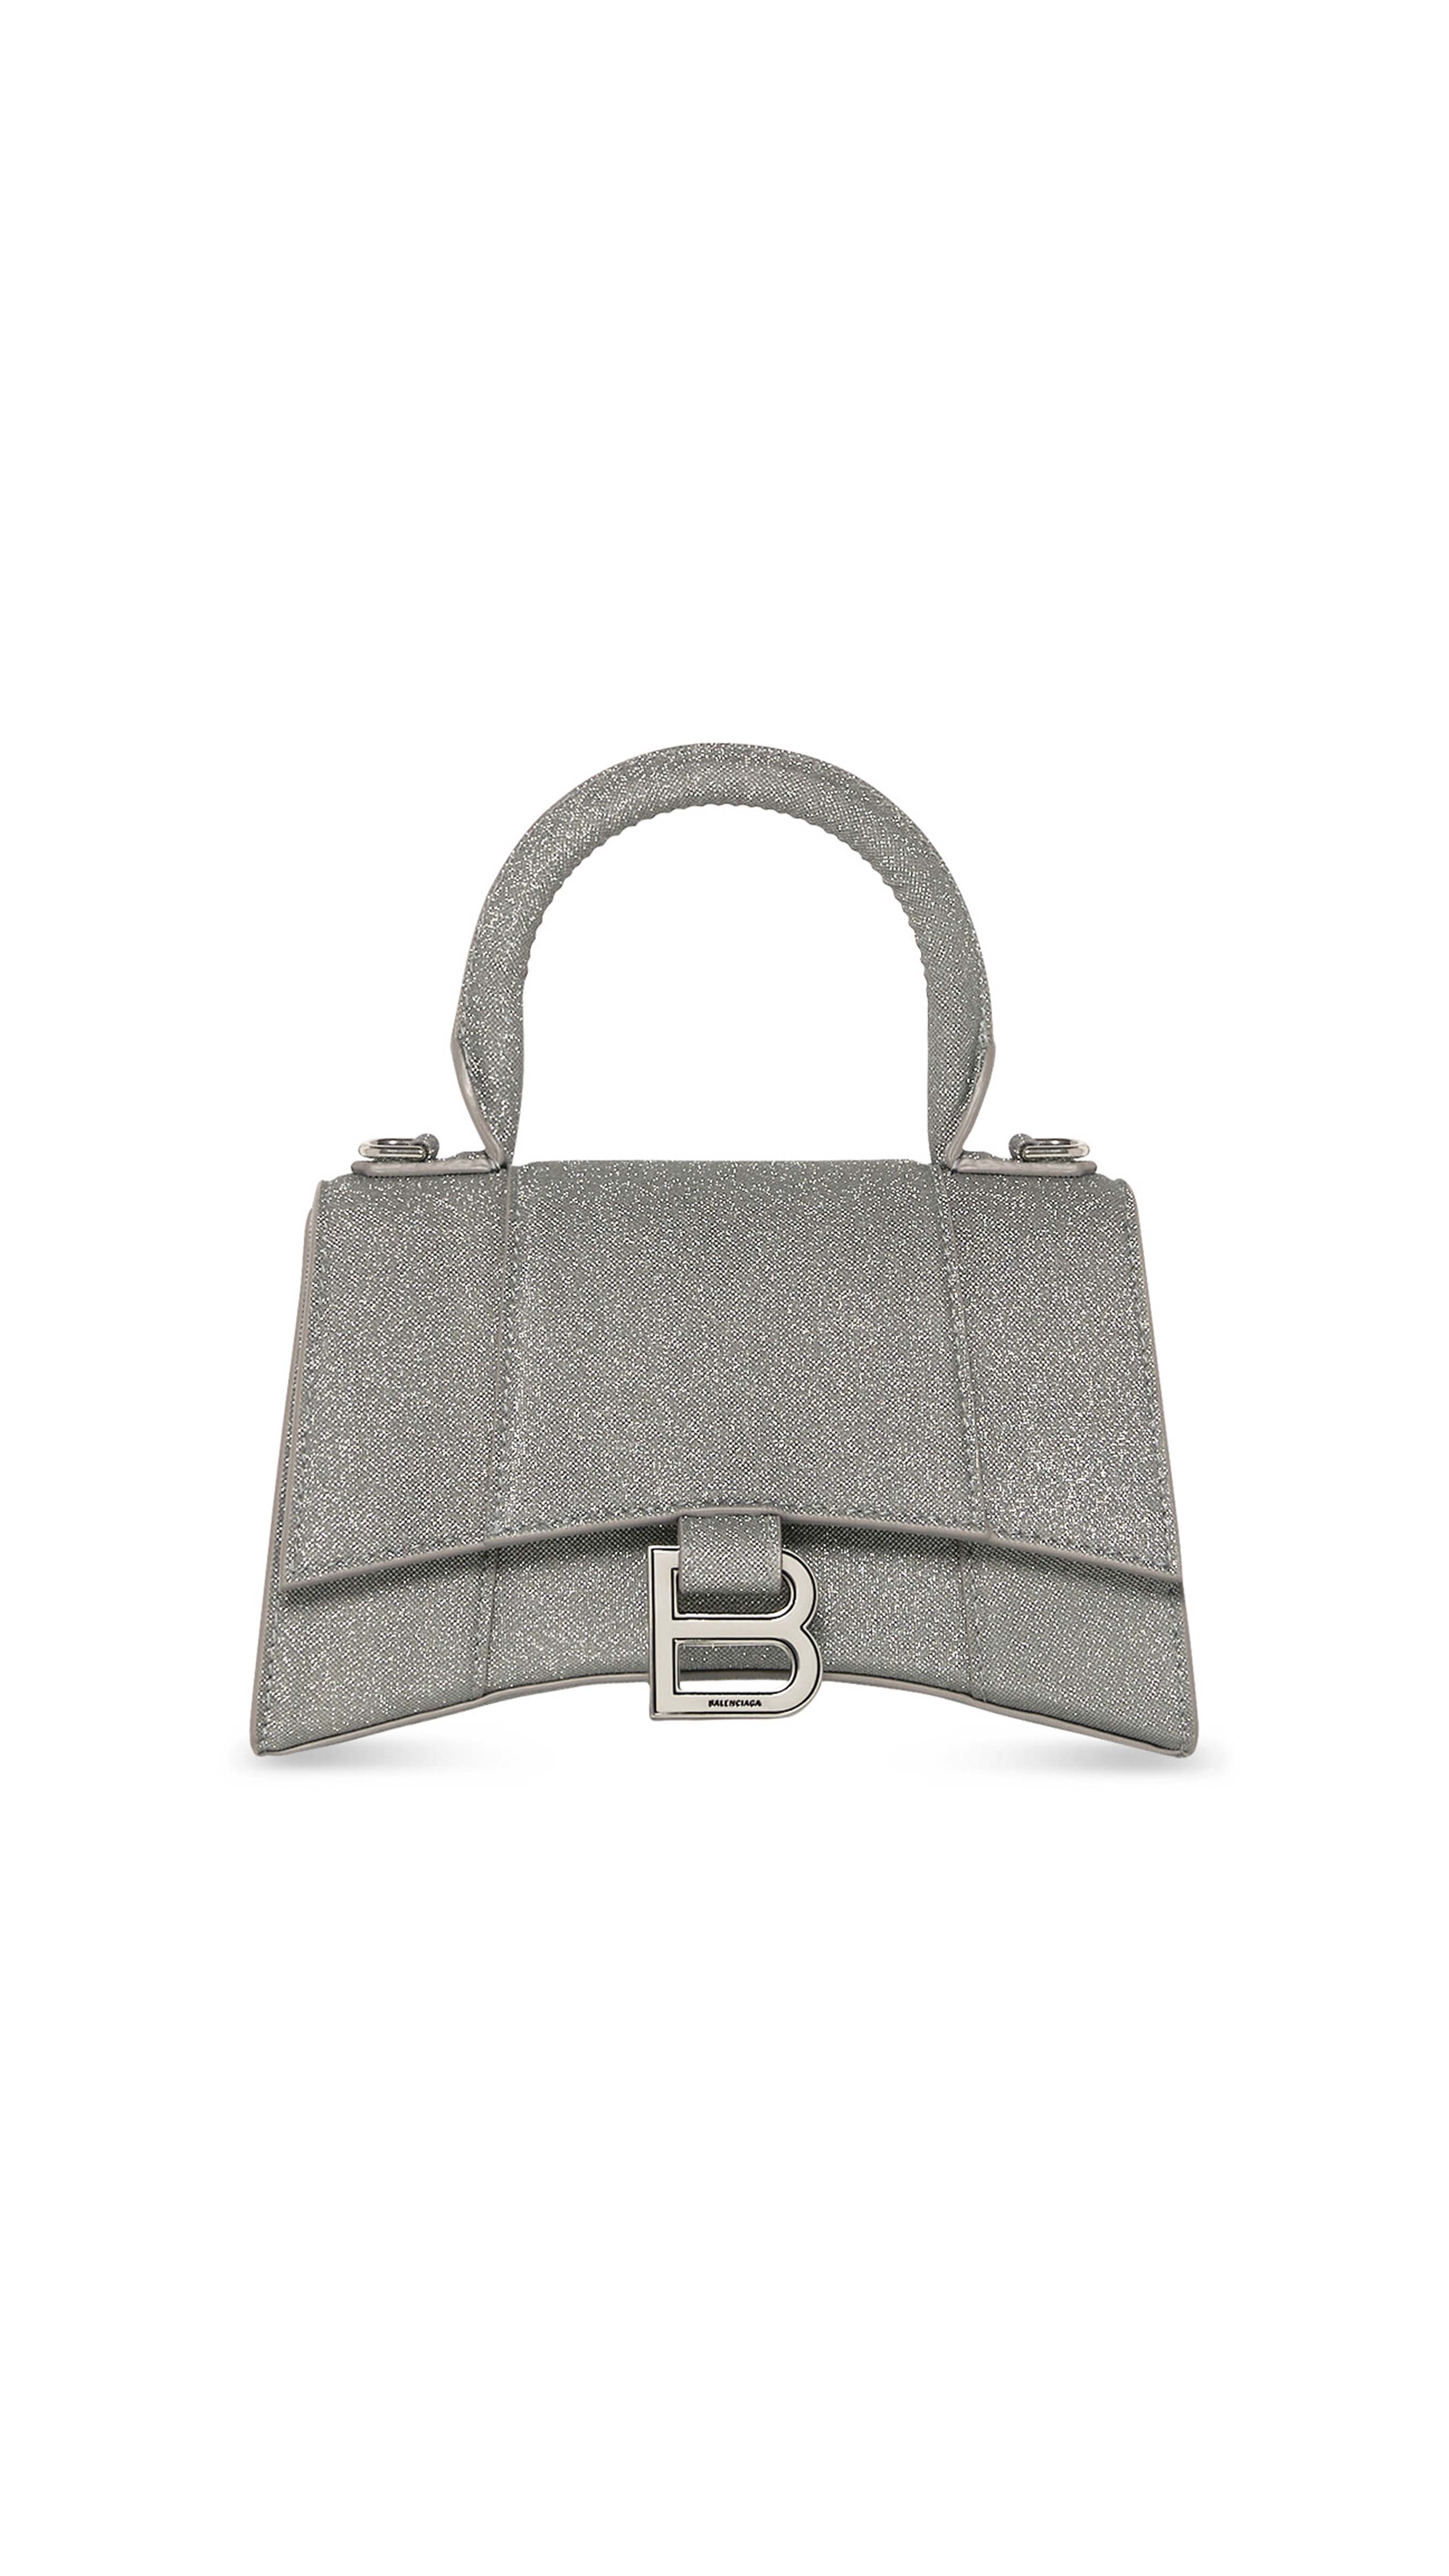 Hourglass XS Handbag - Grey Glitter